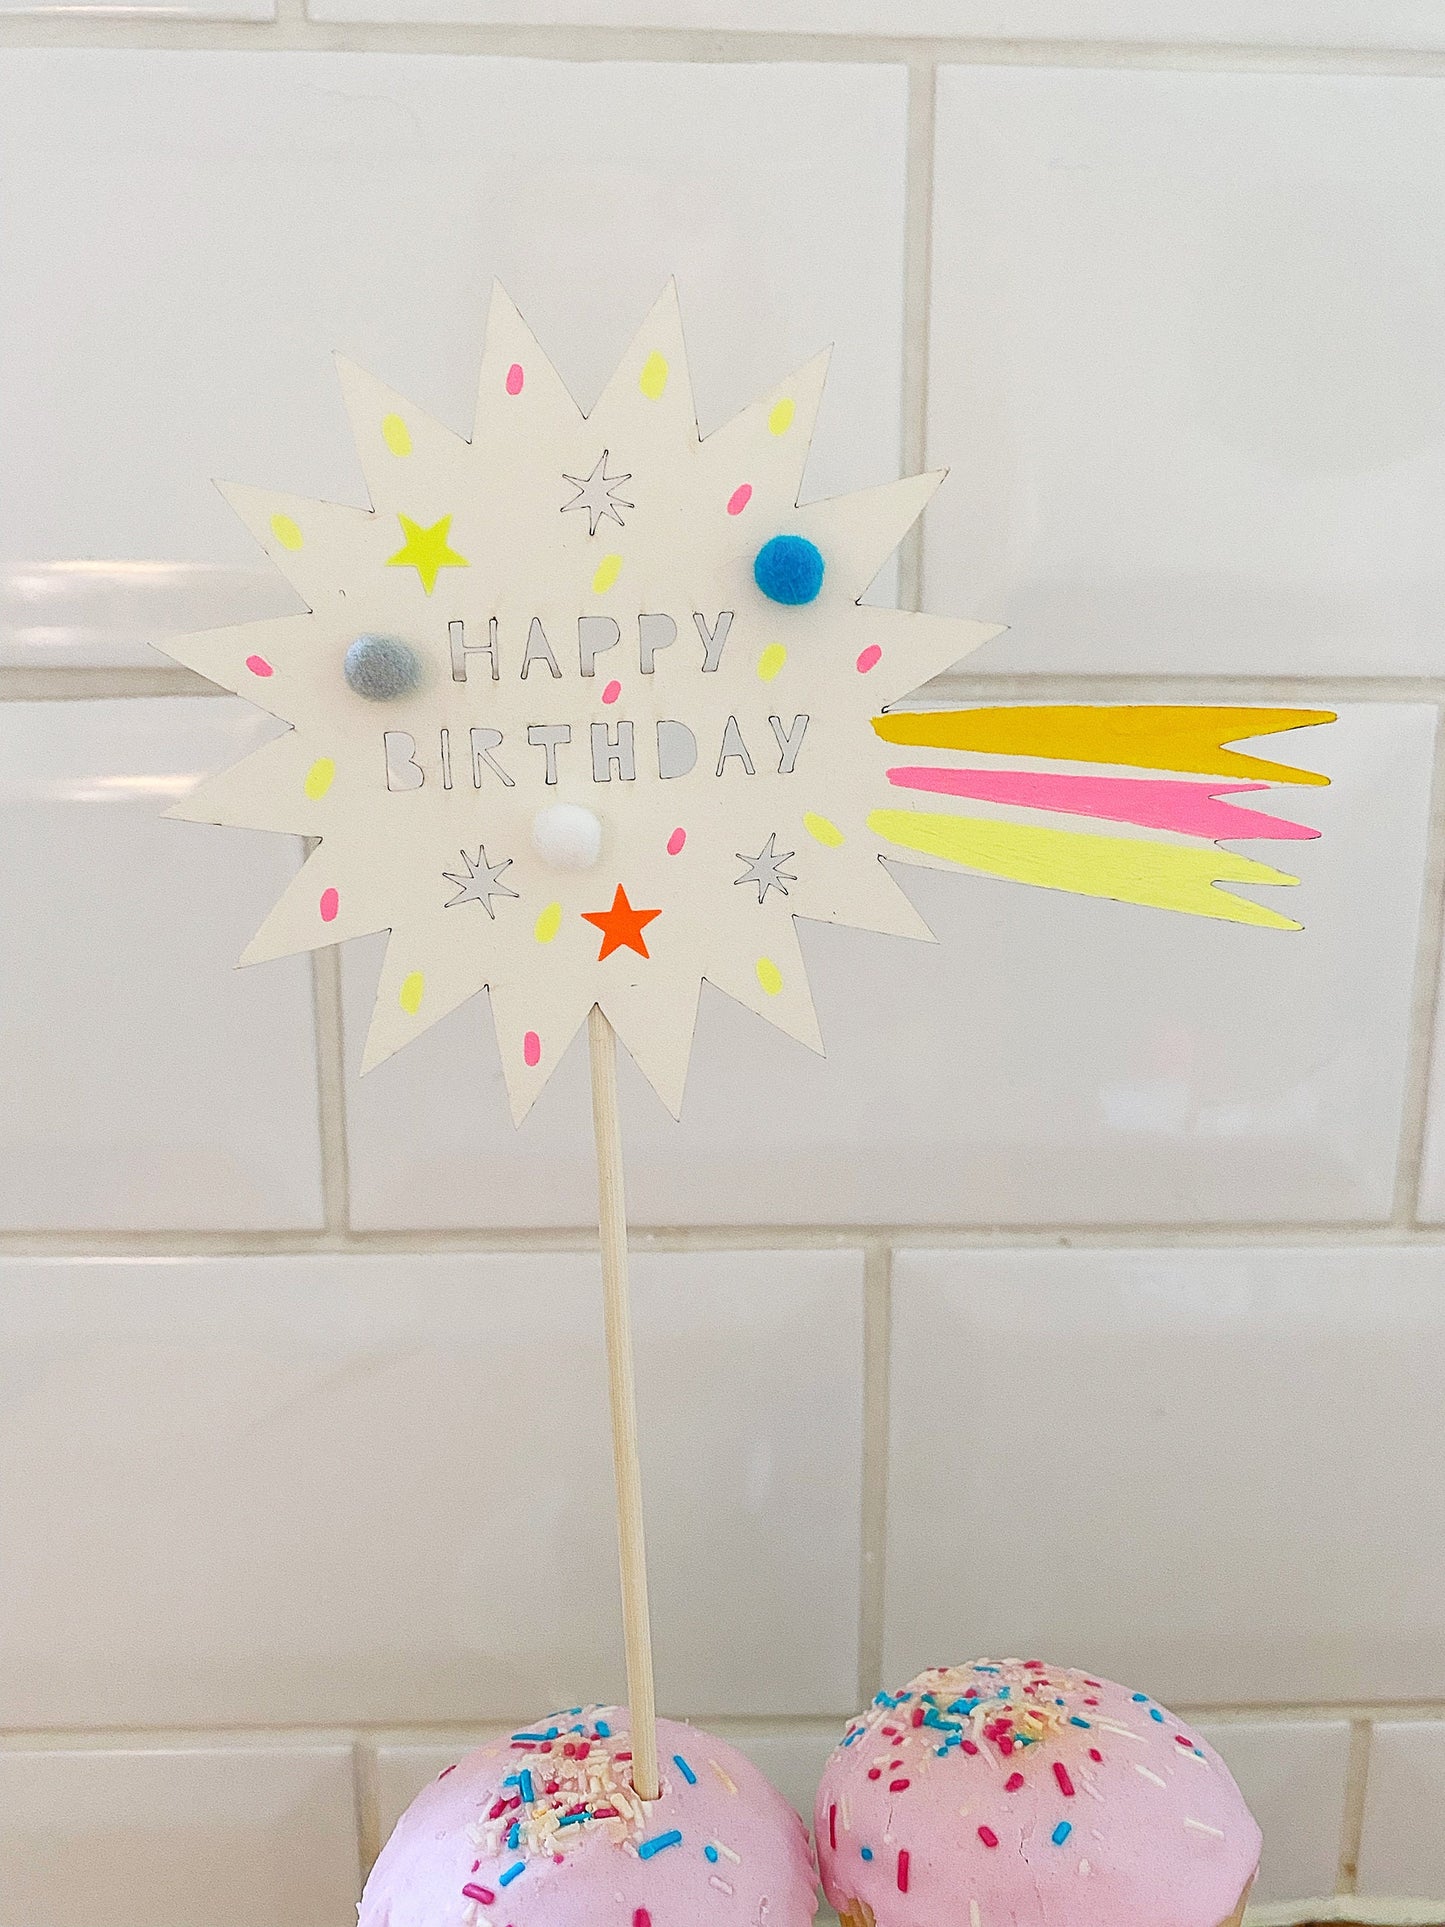 Happy Birthday comet cake topper